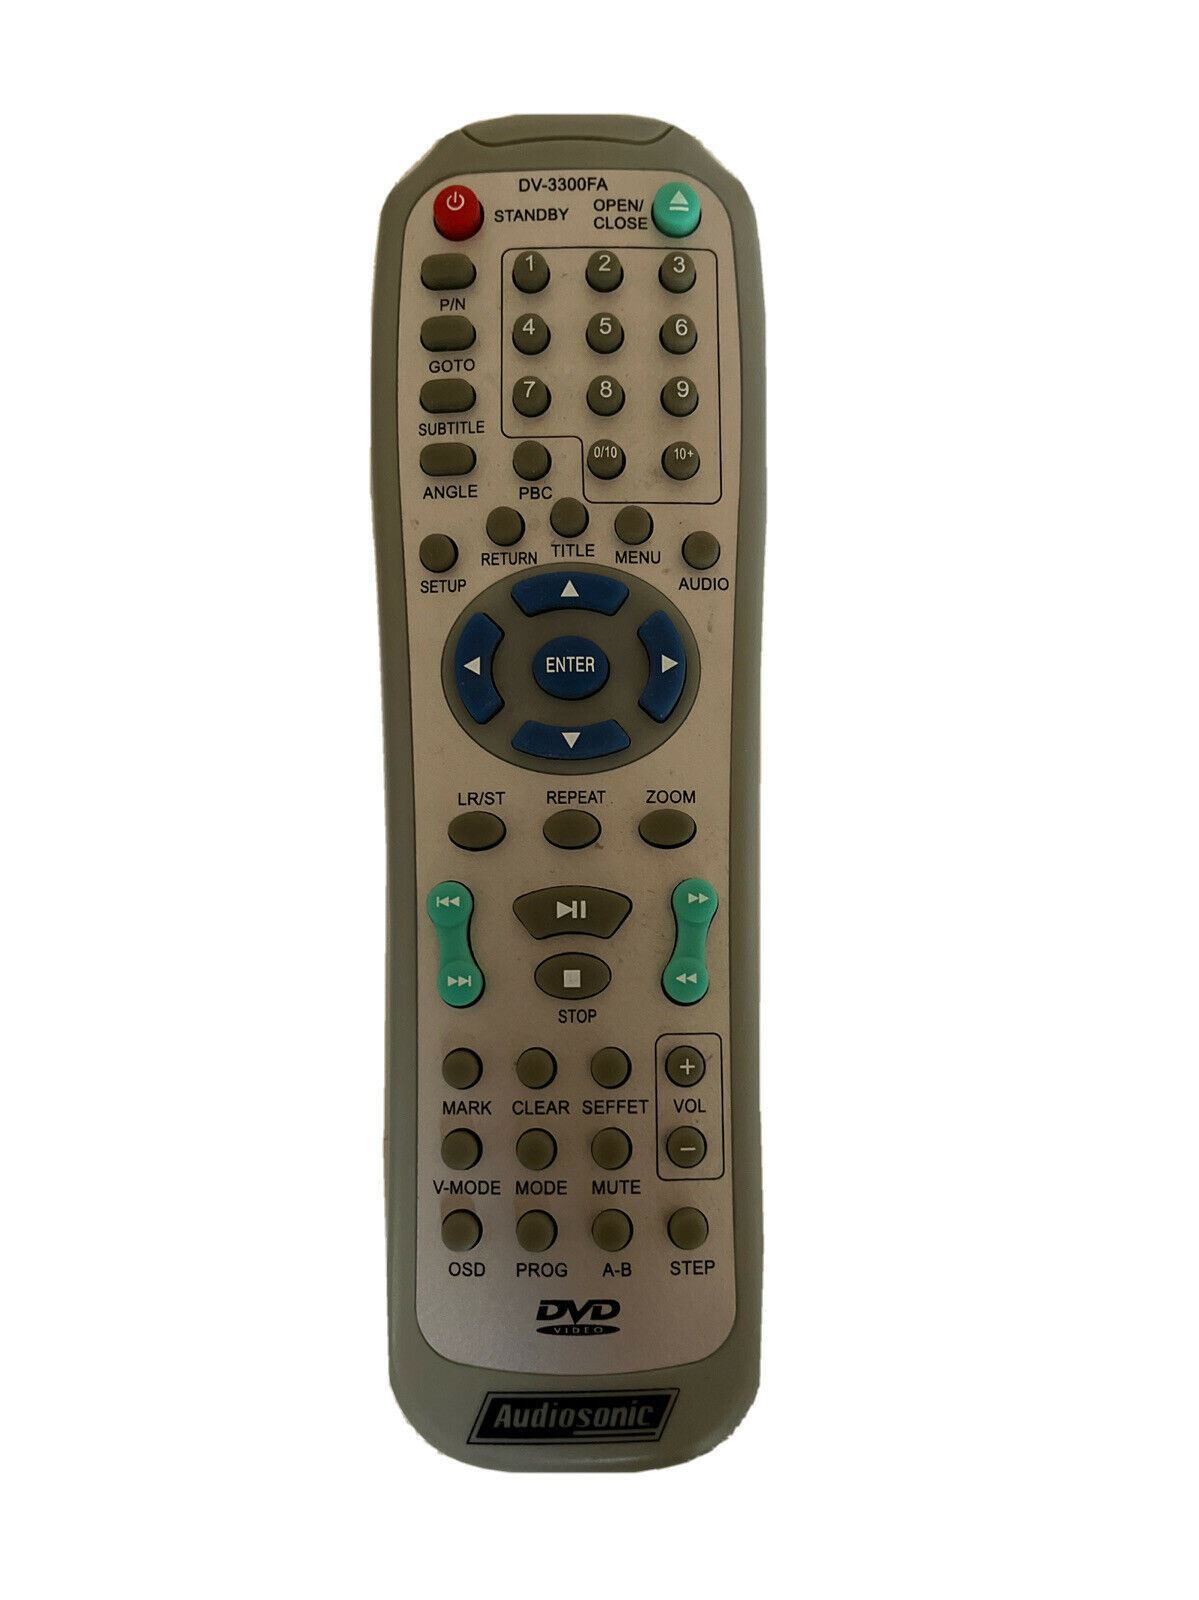 Genuine Audiosonic DV-3300FA DVD Remote Control